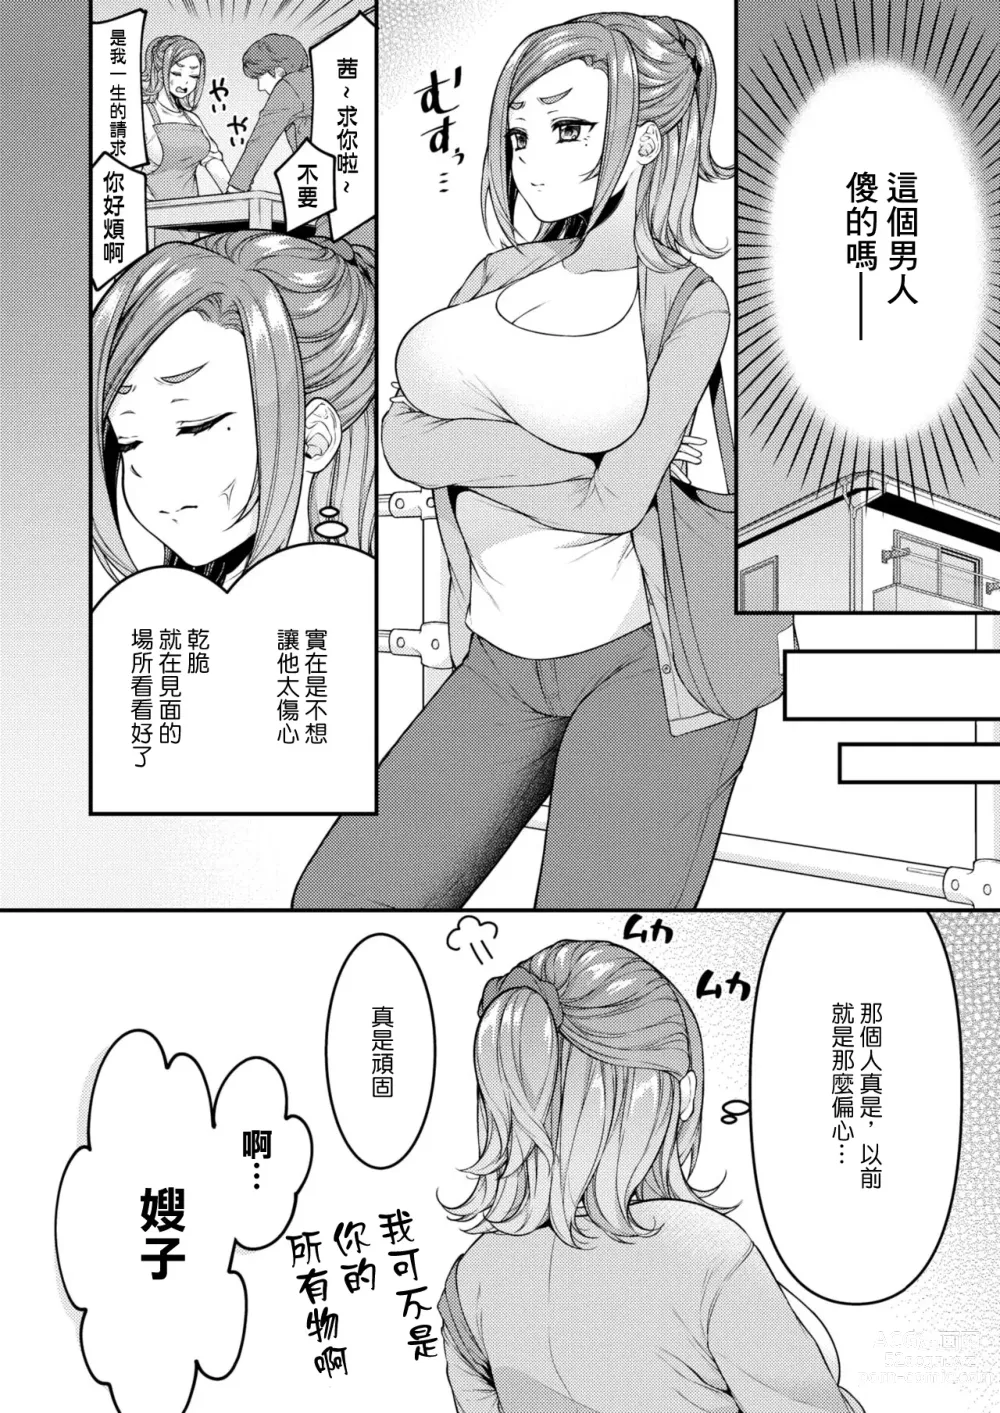 Page 4 of manga Danna to Shitai dake nanoni...